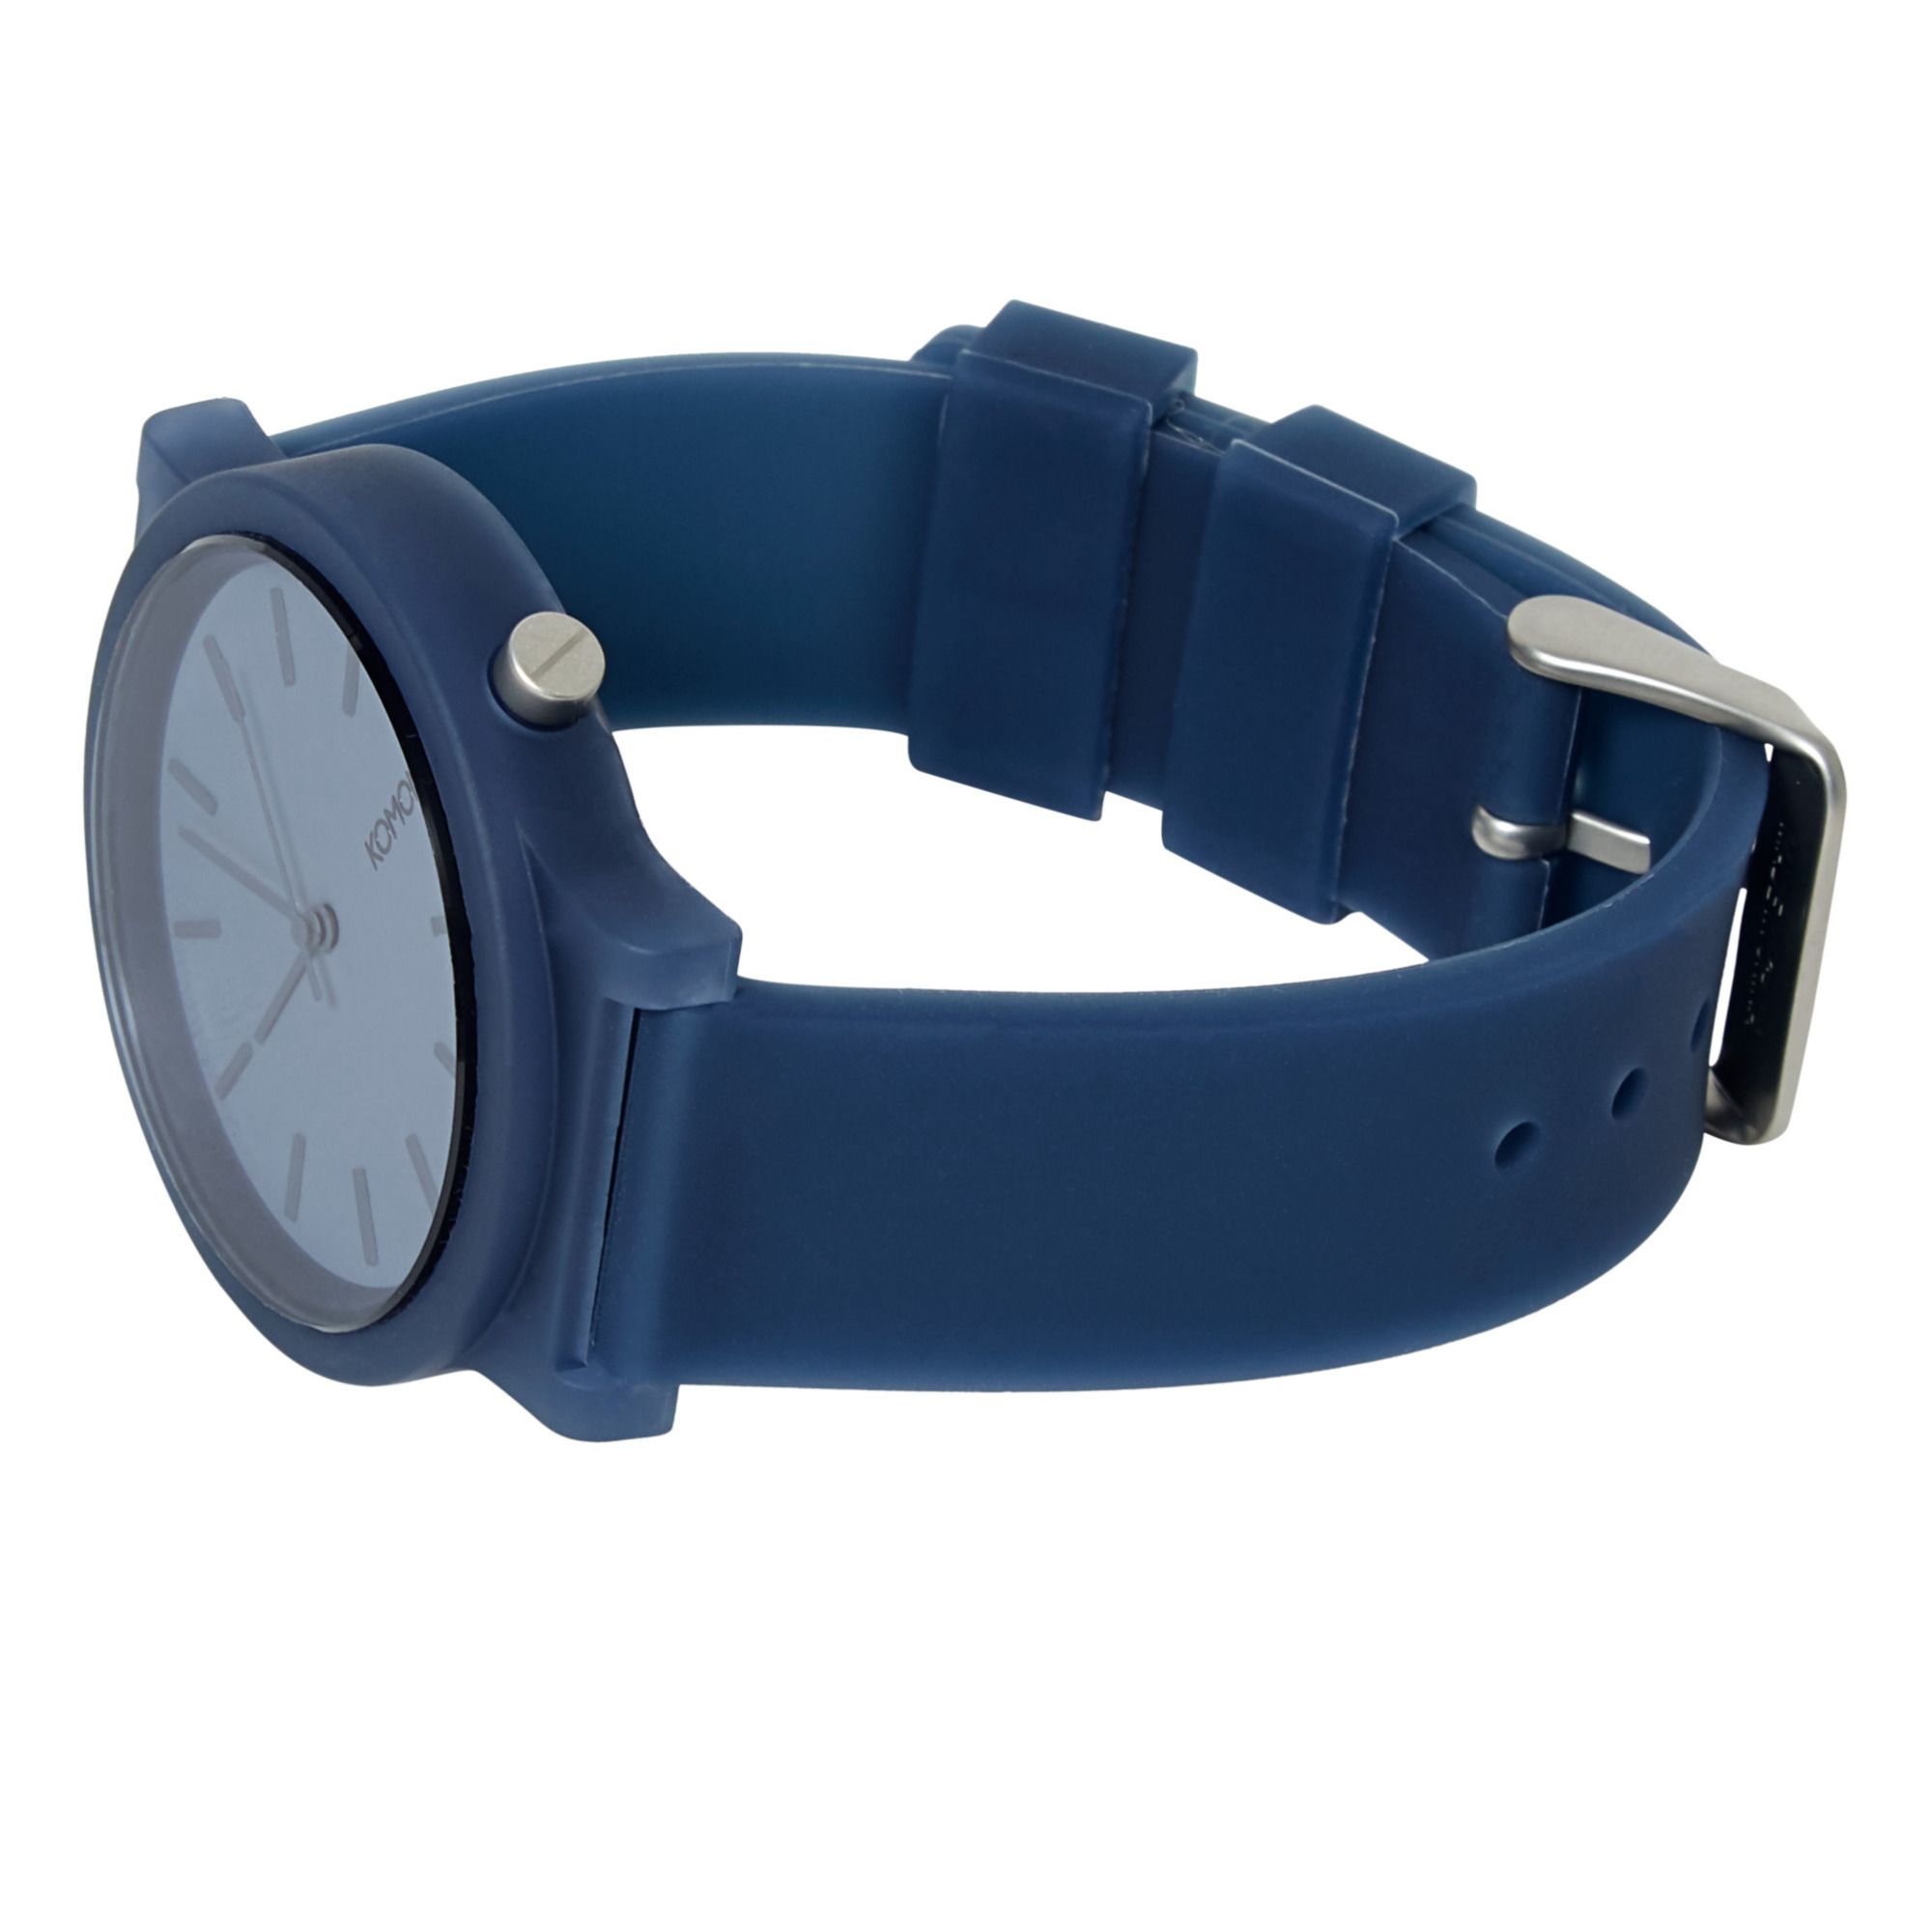 Orologio Mono Glow - Collezione Adulto - Blu marino- Immagine del prodotto n°2